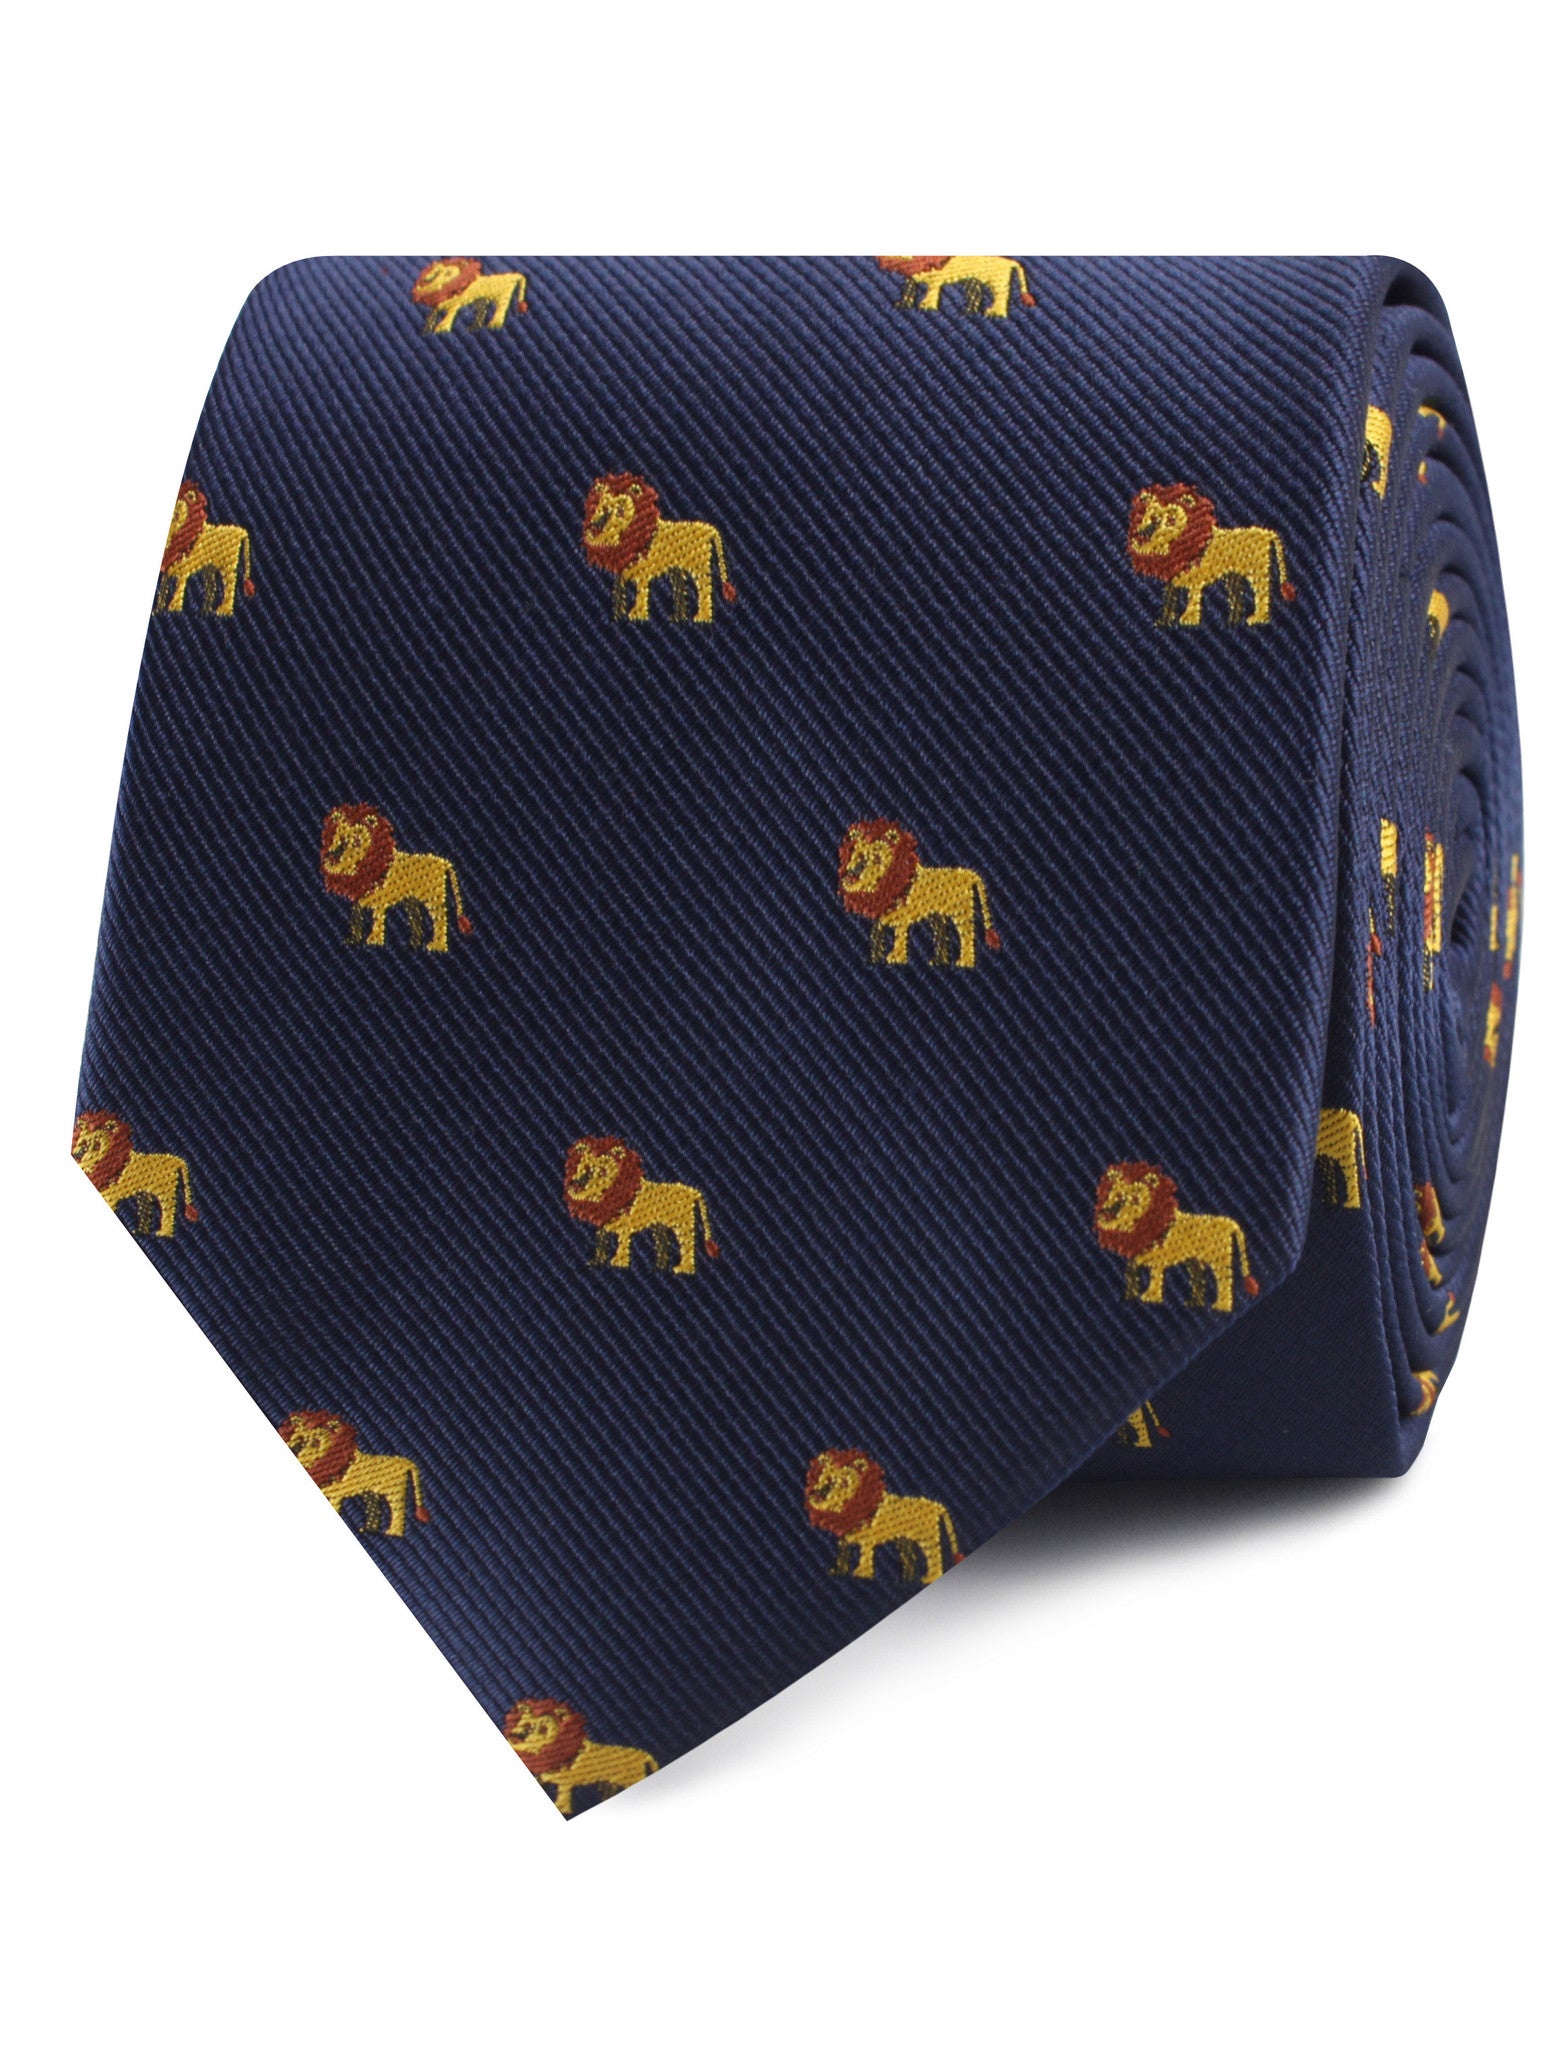 African Lion Necktie